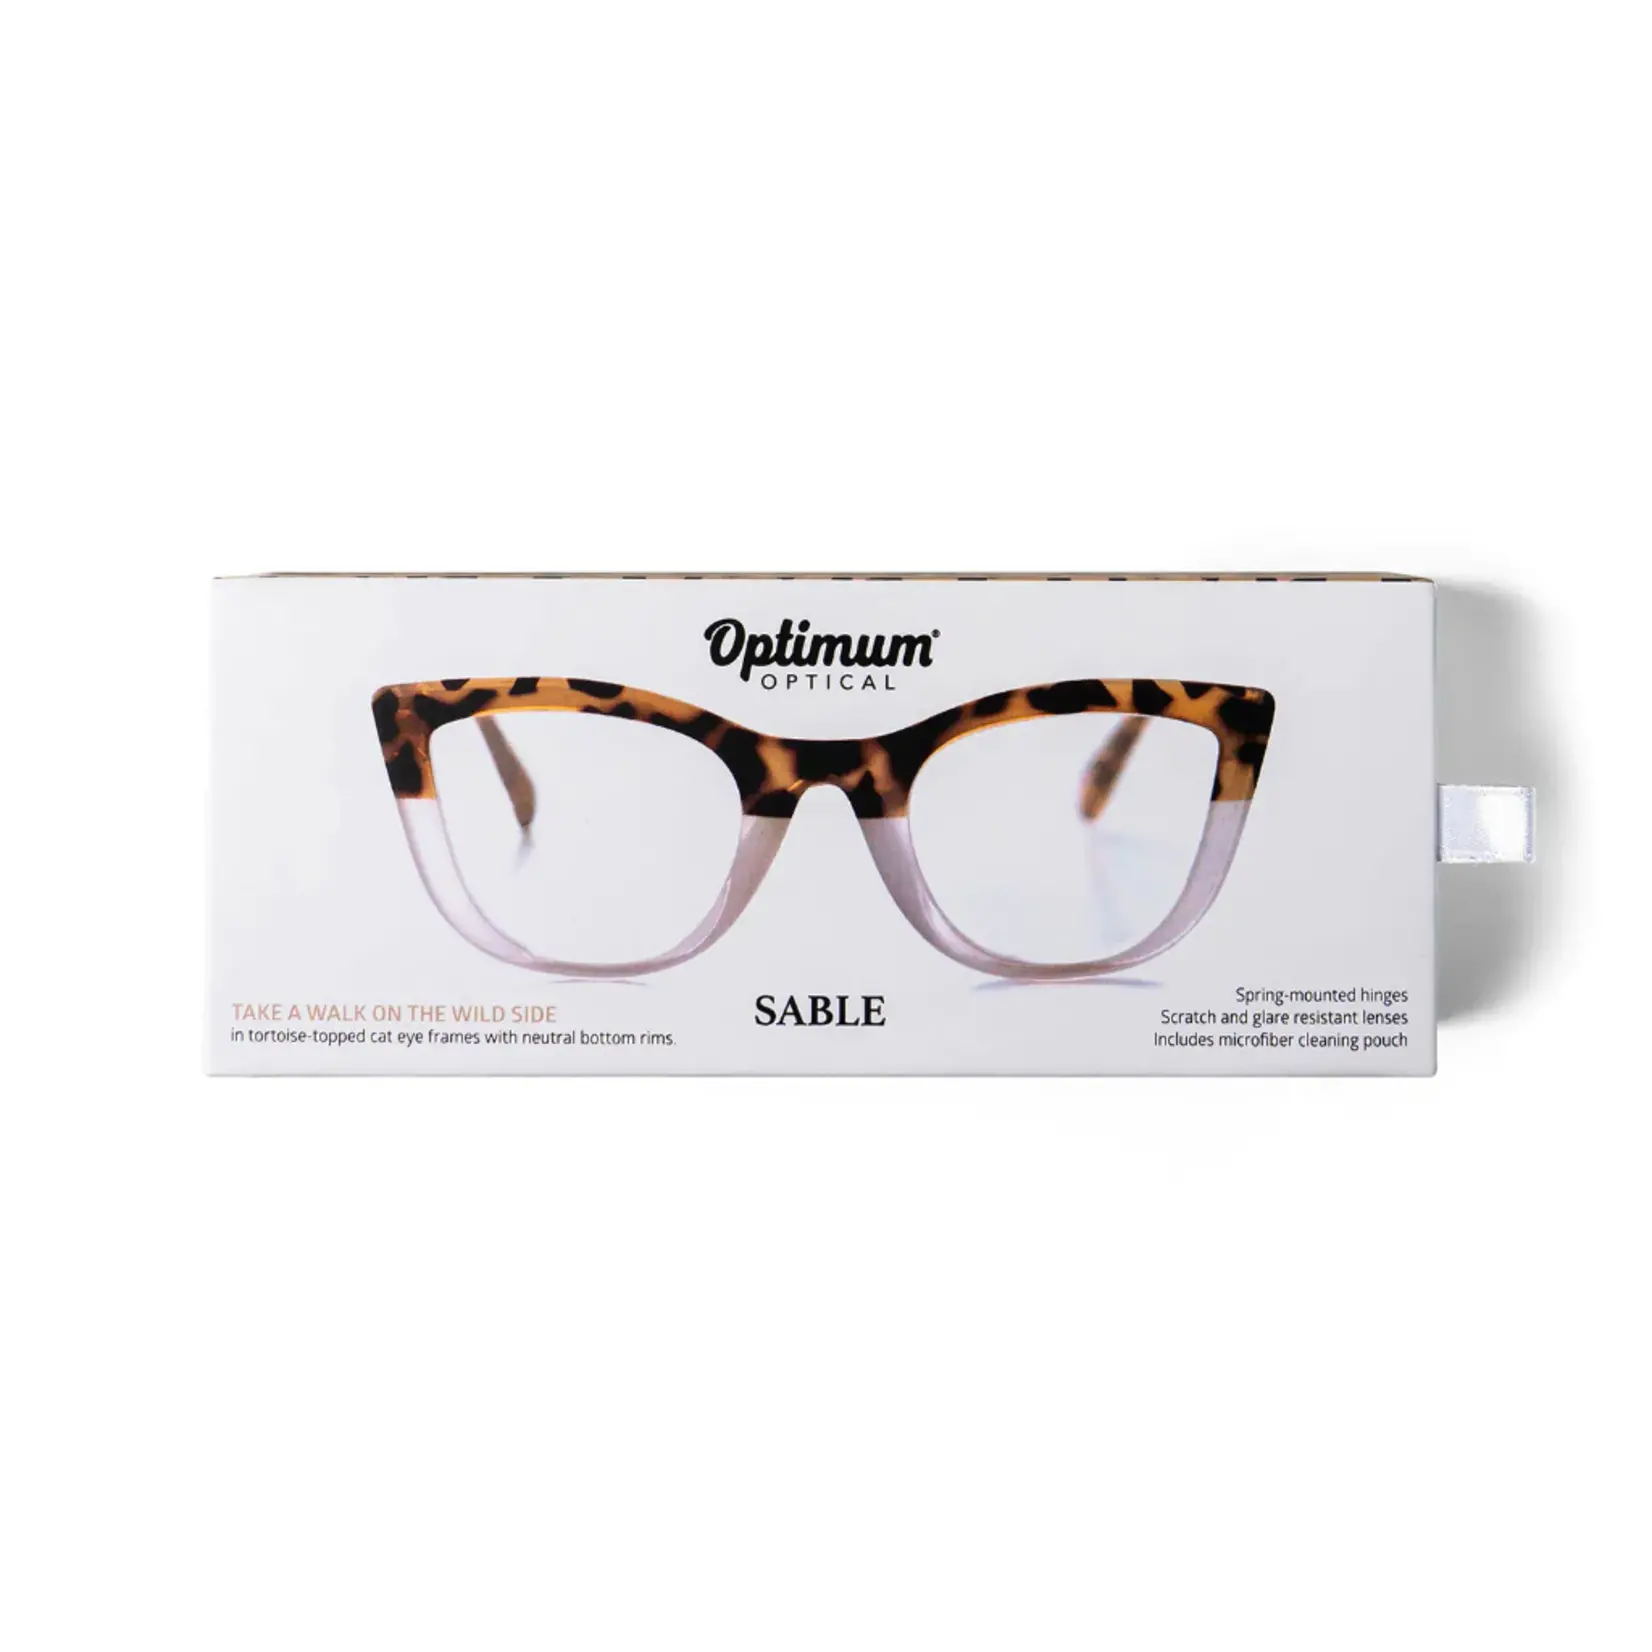 Optimum Reader Glasses: Sable